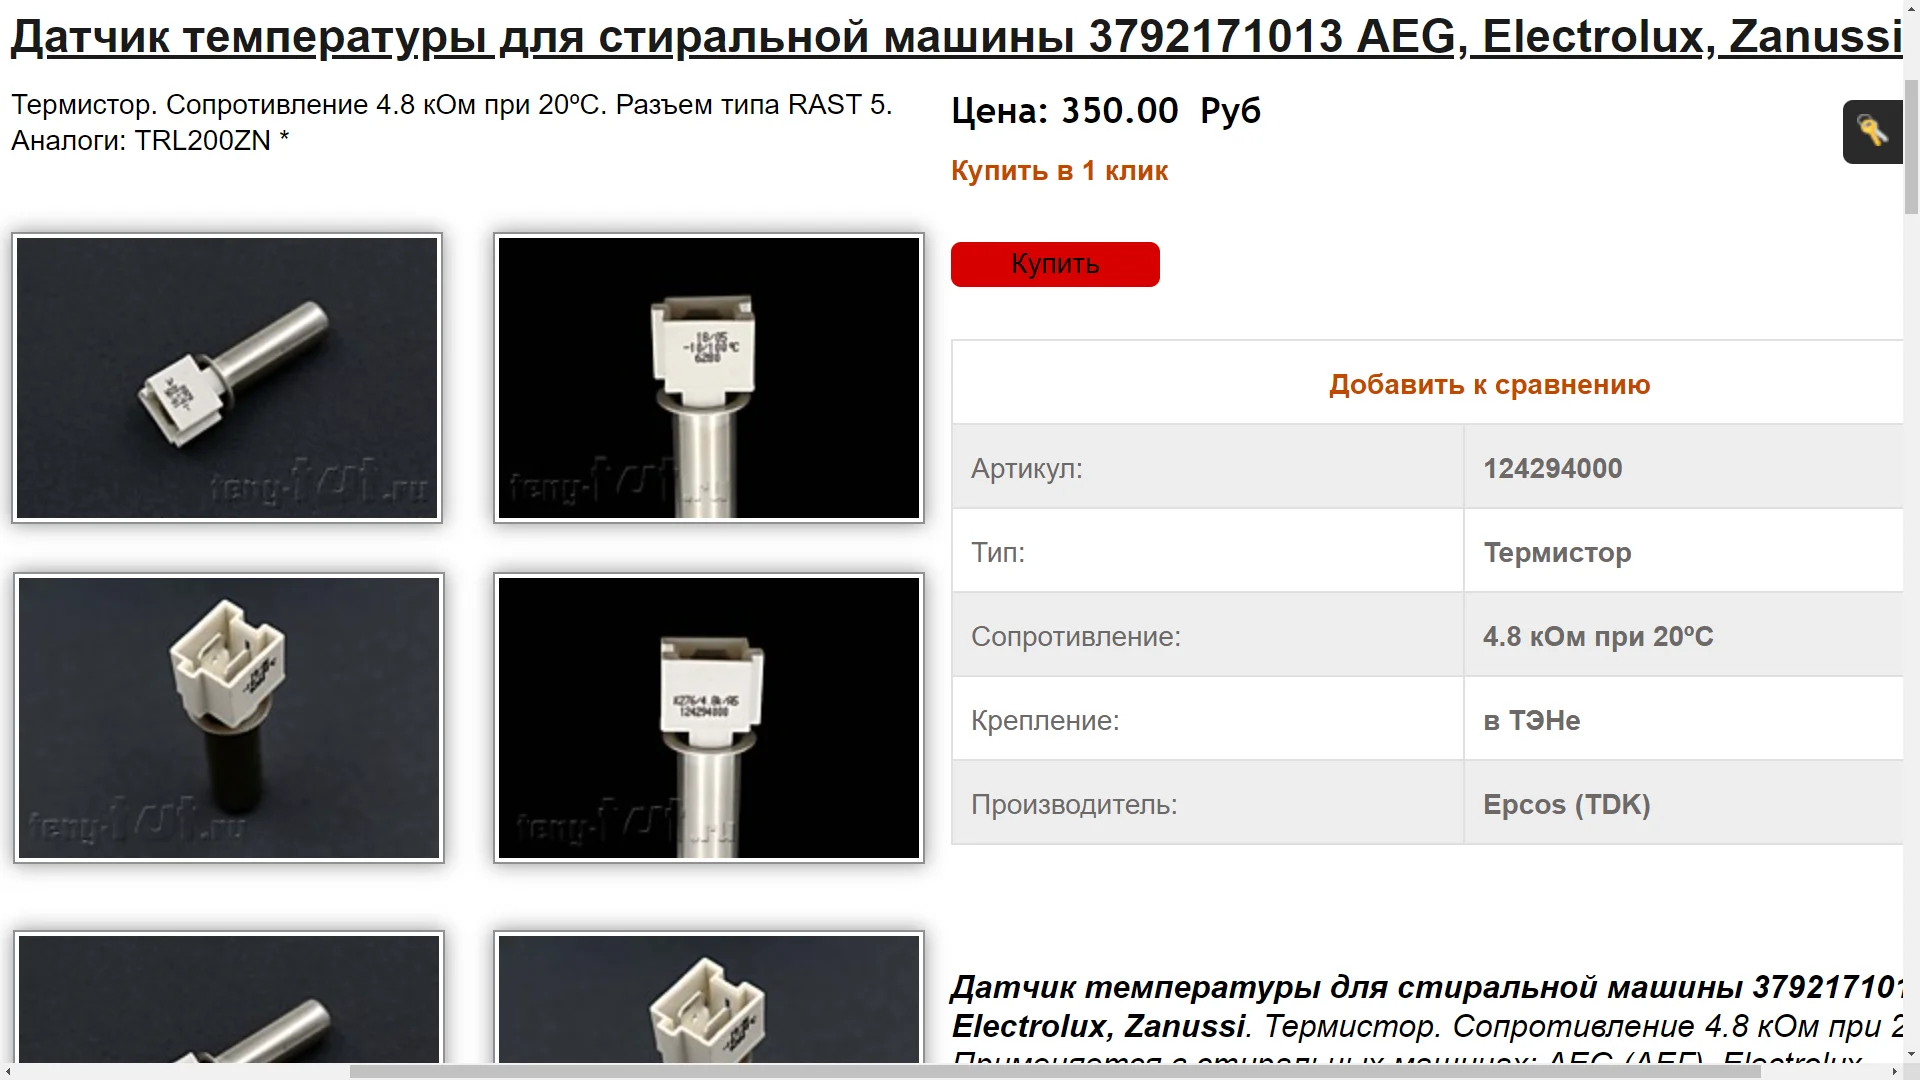 ELECTROLUX AEG Zanker sèche-linge température thermostat 8996694047516 # 11b252 